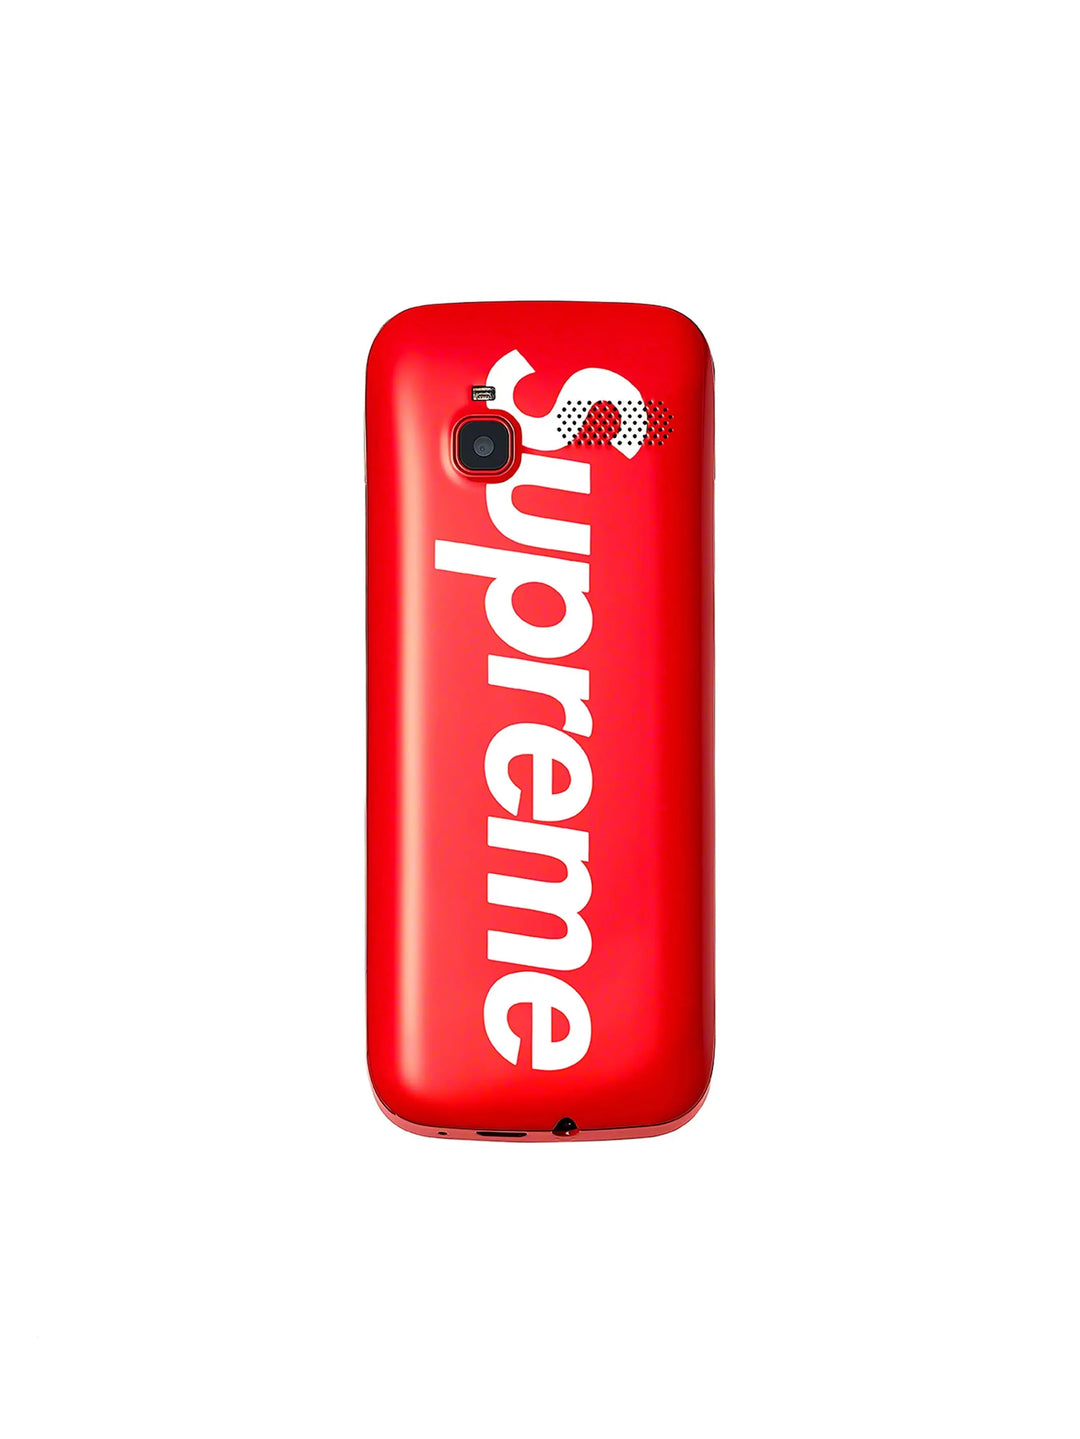 Supreme BLU Burner Phone Red in Melbourne, Australia - Prior